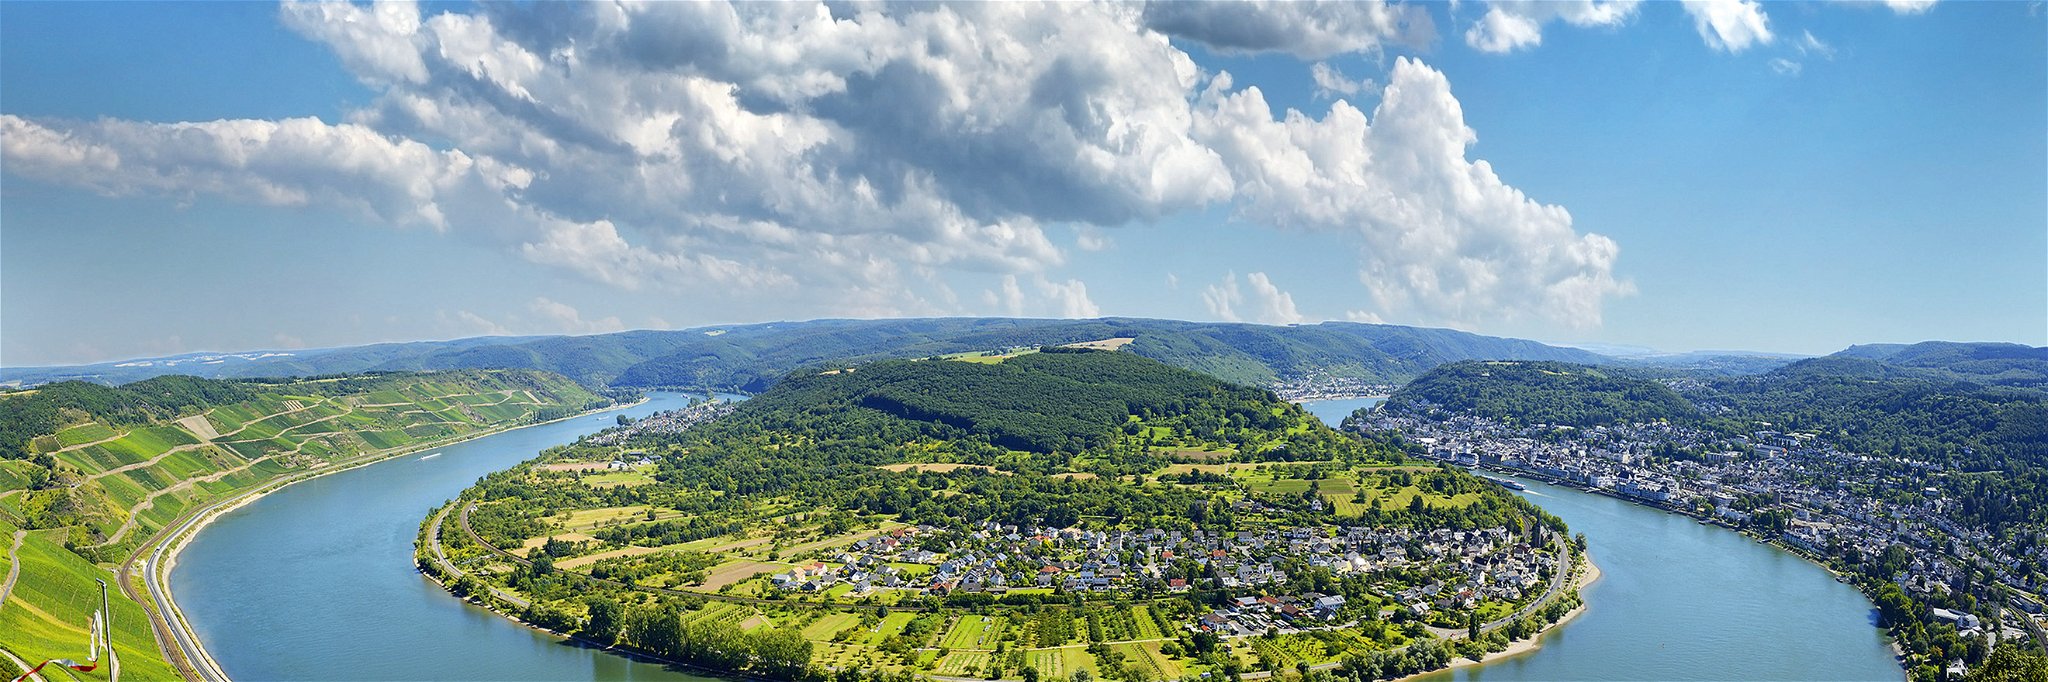 Rheinschleife bei Boppard – einem der bekanntesten Orte der Weinregion Mittelrhein.